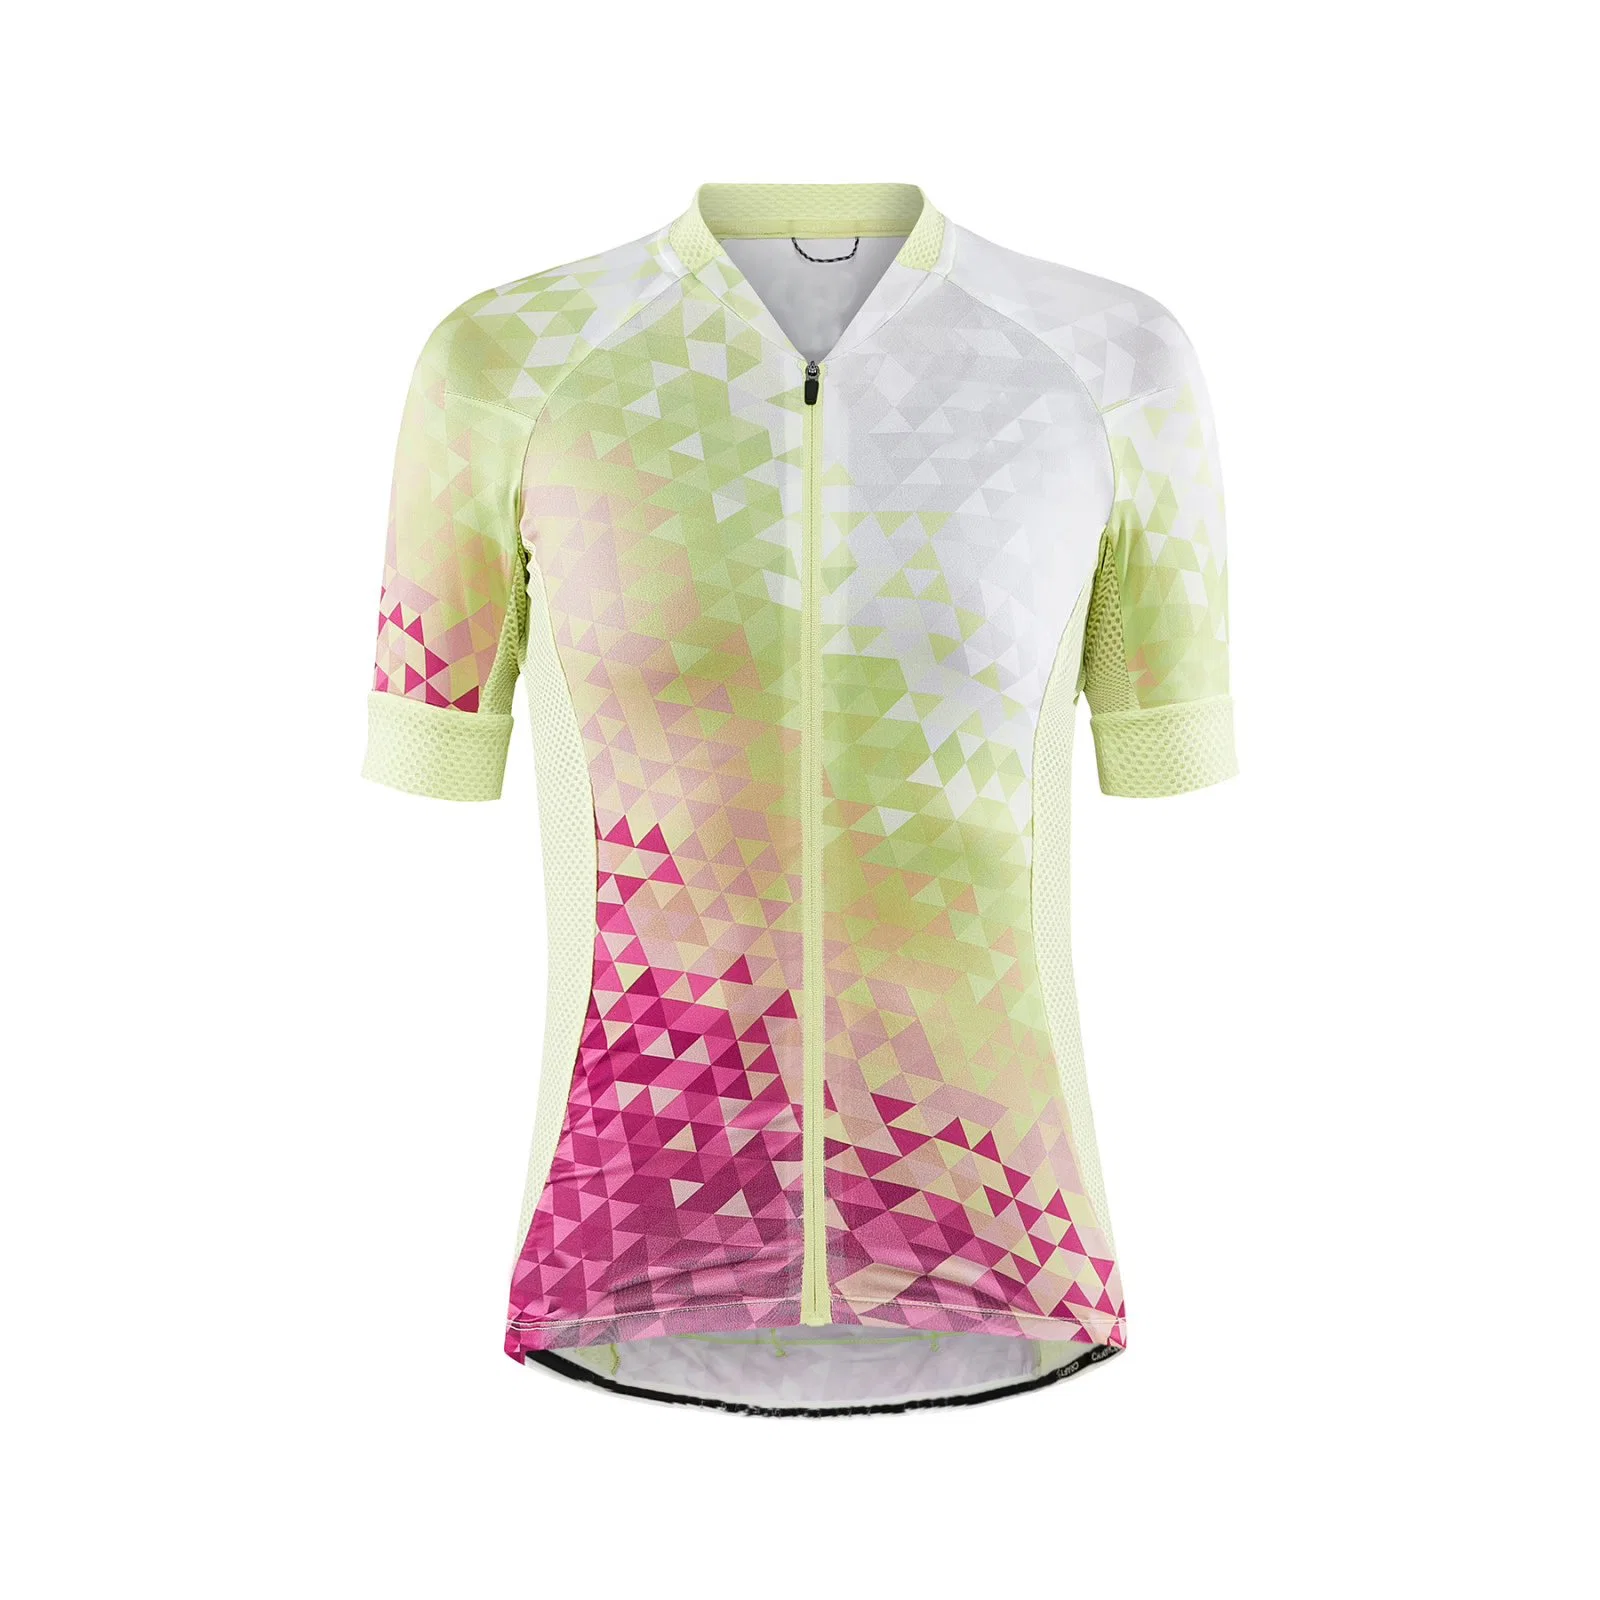 Service OEM plein de vêtements de cyclisme Sublimation confortable Short Sleeve Jersey du cycle de la femme personnalisé jerseys pour le cyclisme